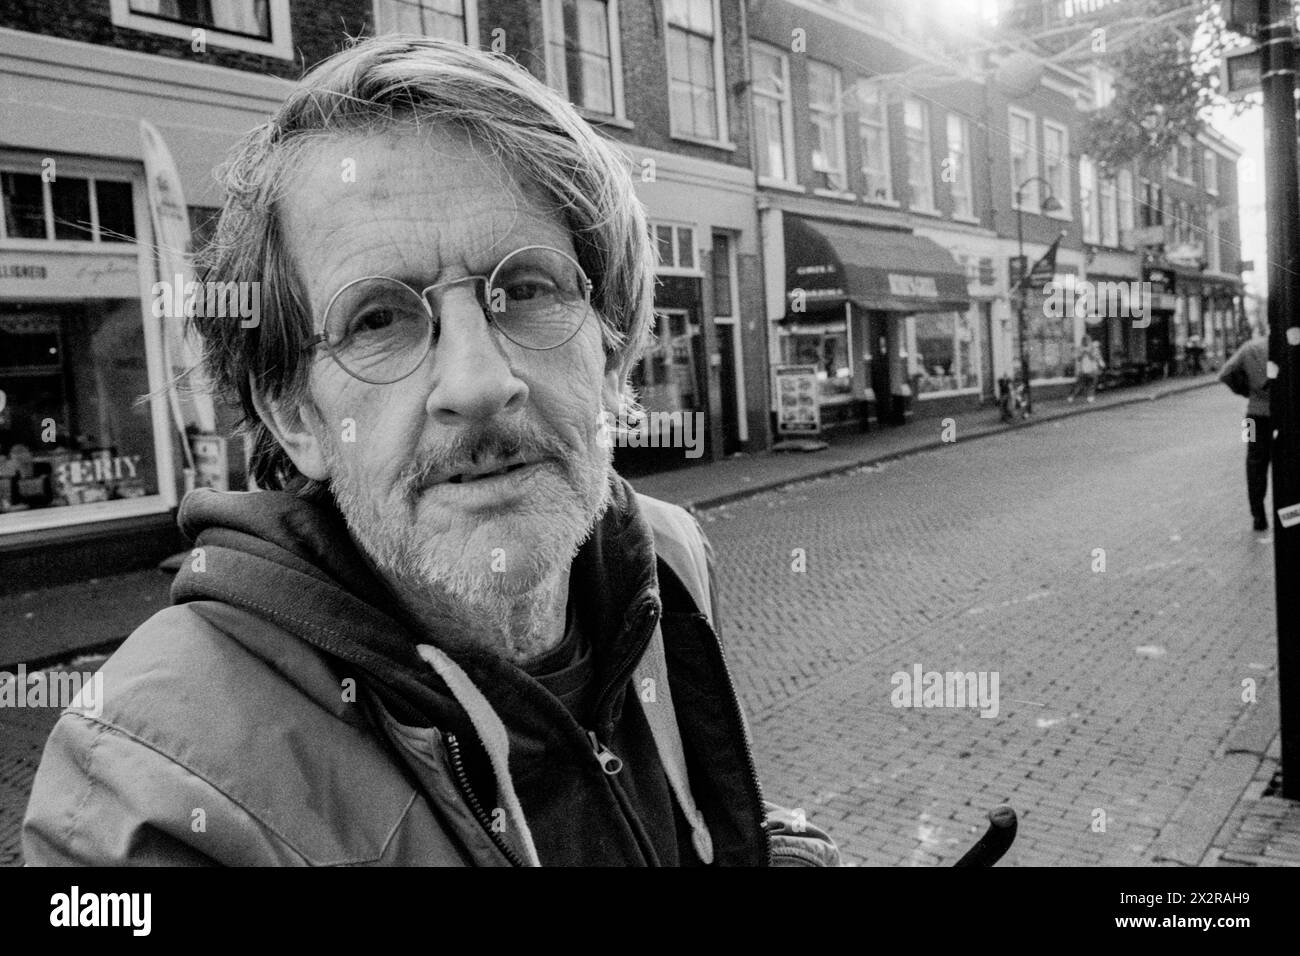 Porträt Mann mit Brille Delft, Niederlande. Portait eines erwachsenen kaukasiers, der durch die Straßen von Zwillingen streift. Delft Binnenstad / Grachtengordel Zuid-Holland Nederland Copyright: XGuidoxKoppesxPhotox Stockfoto